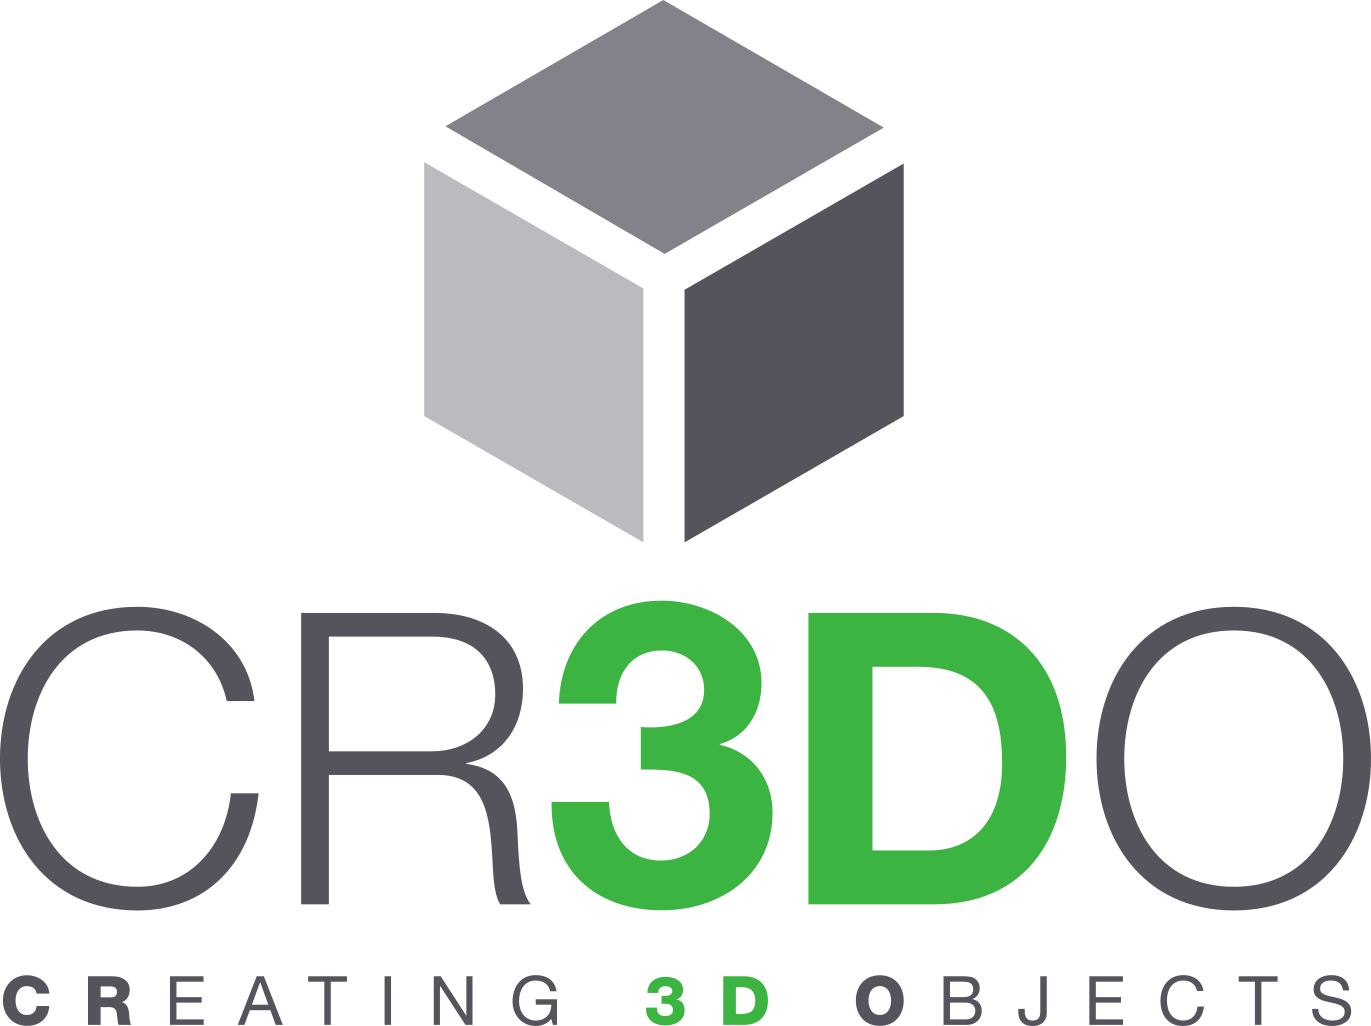 Cr3do_logo_square